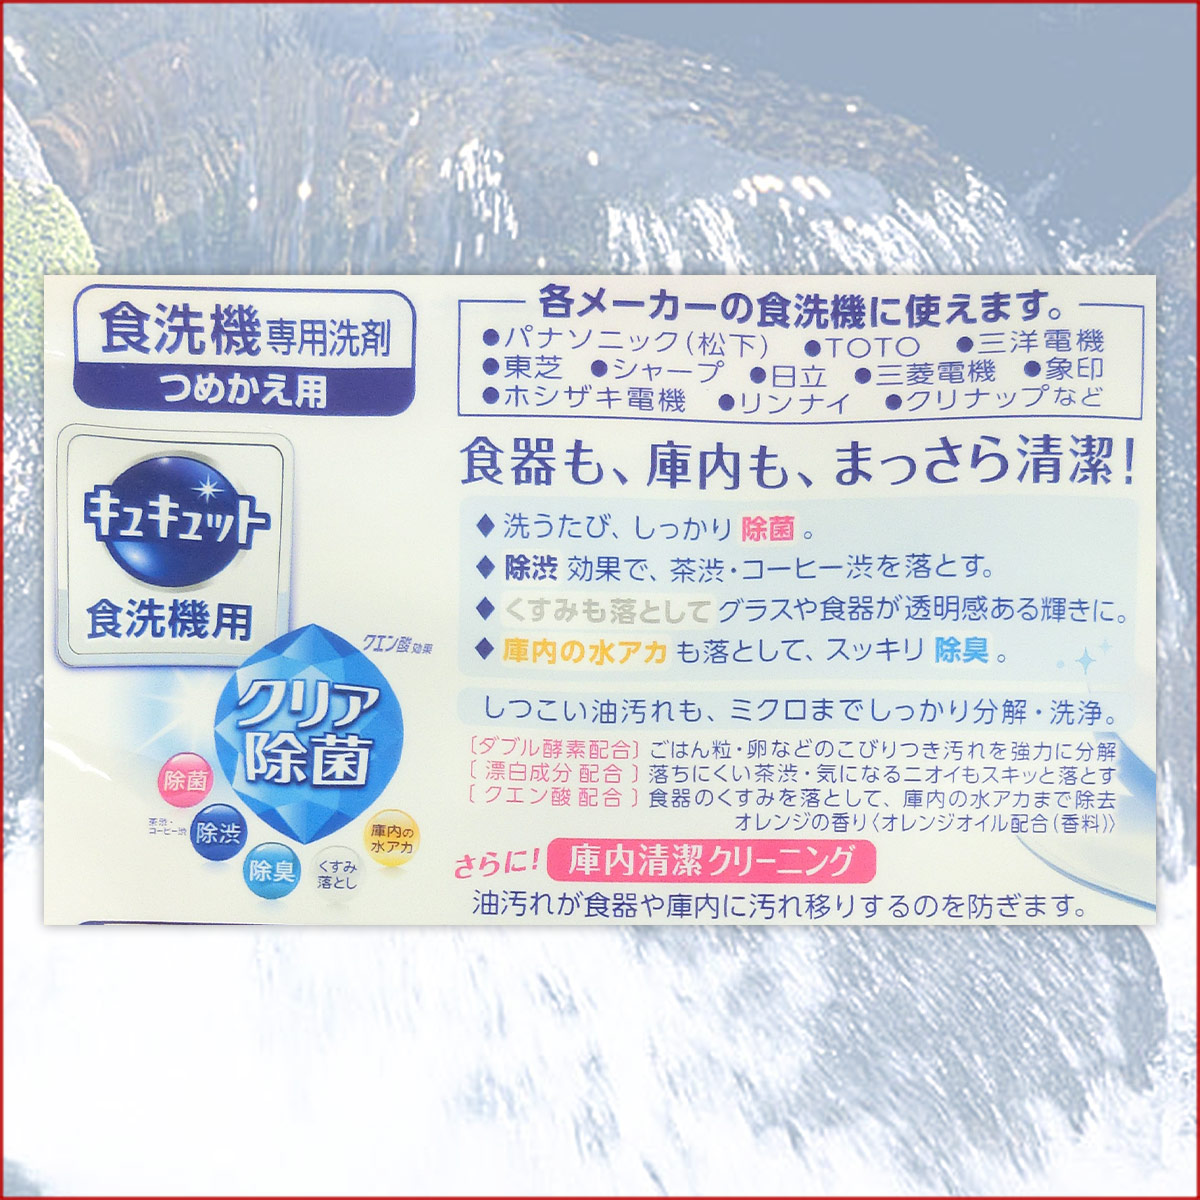 Bột rửa bát Kyukyuto chuyên dụng cho máy rửa chén bát 550g hương cam - made in Japan